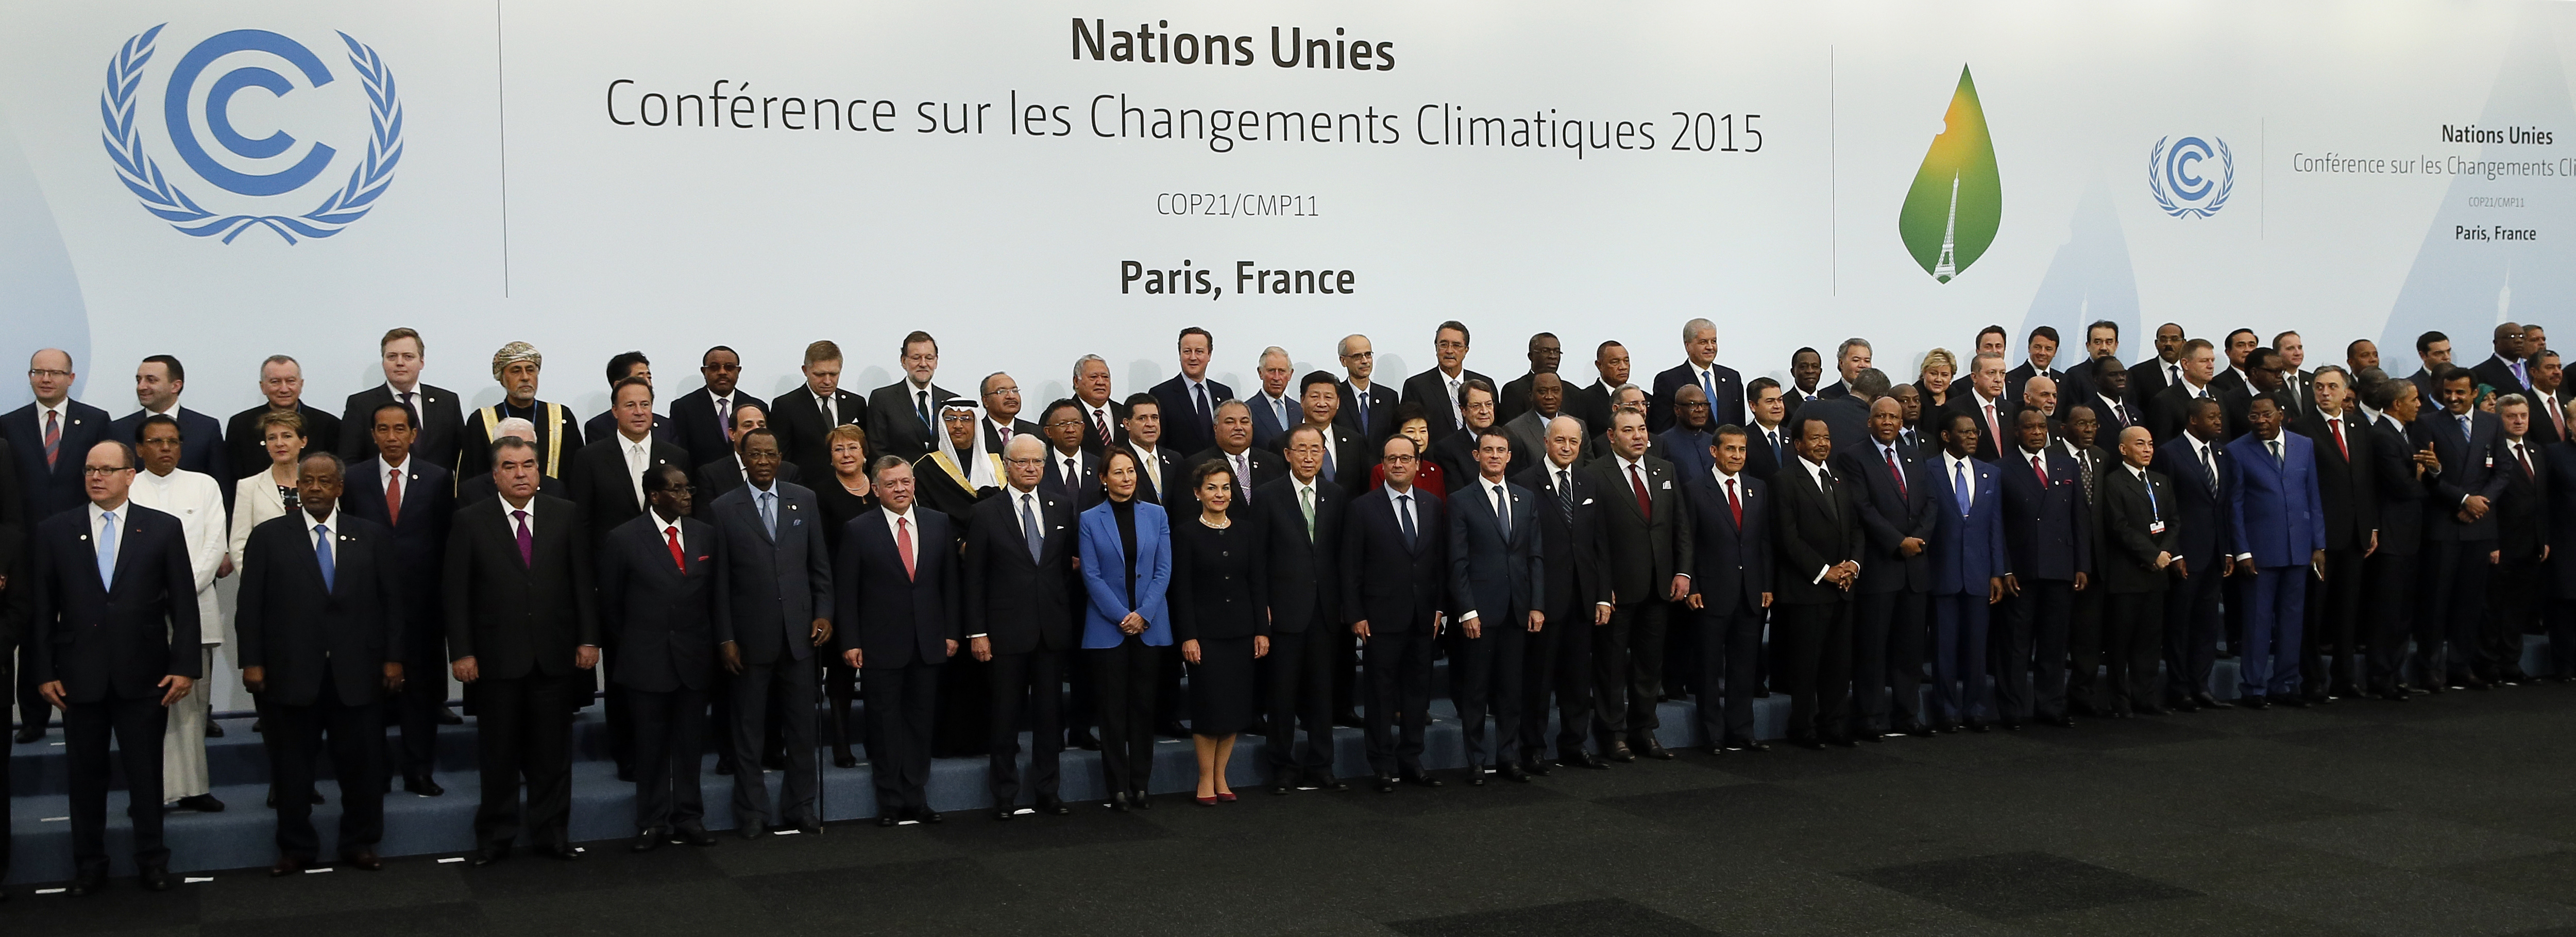 Международная конференции 2015. Конференция по климату в Париже 2015. Парижское соглашение 2015. Париж 2015 климатическая конференция. Парижское соглашение по климату 2015.